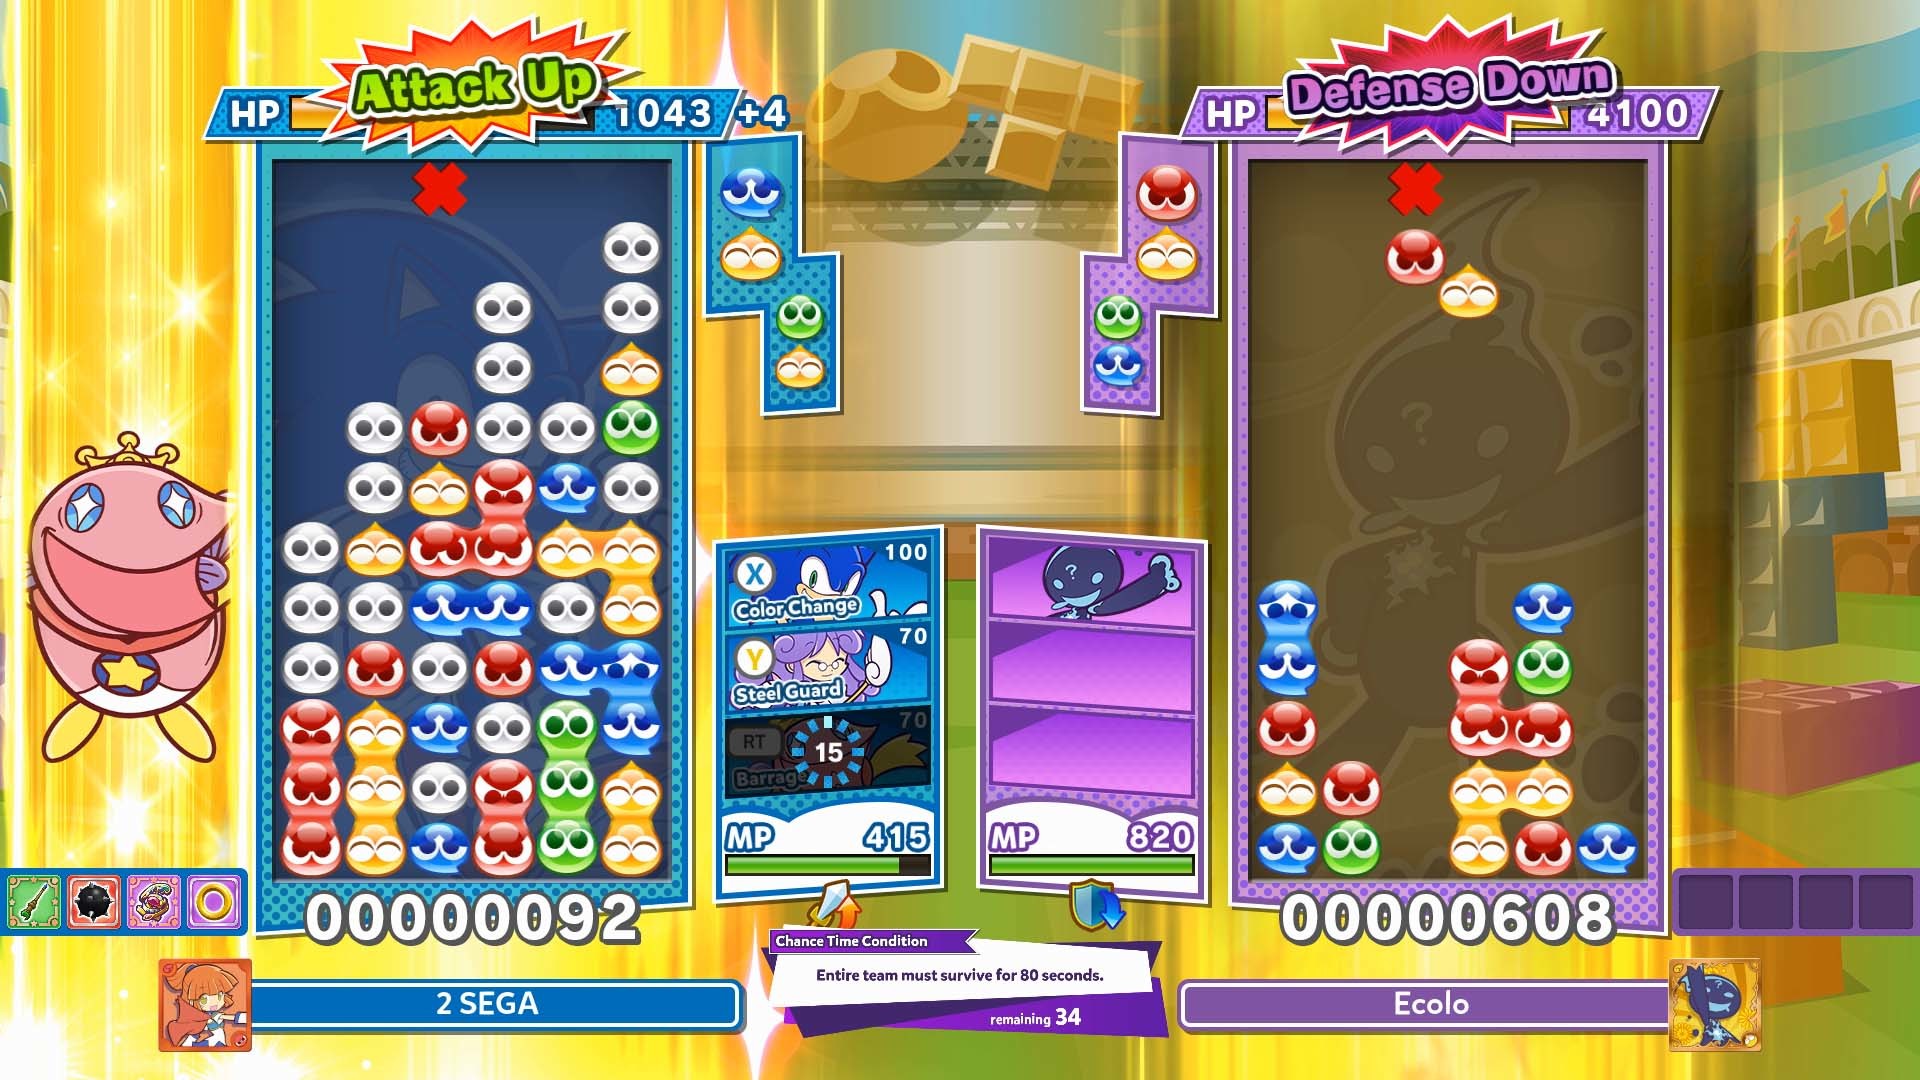 Скриншот-1 из игры Puyo Puyo Tetris 2 для PS